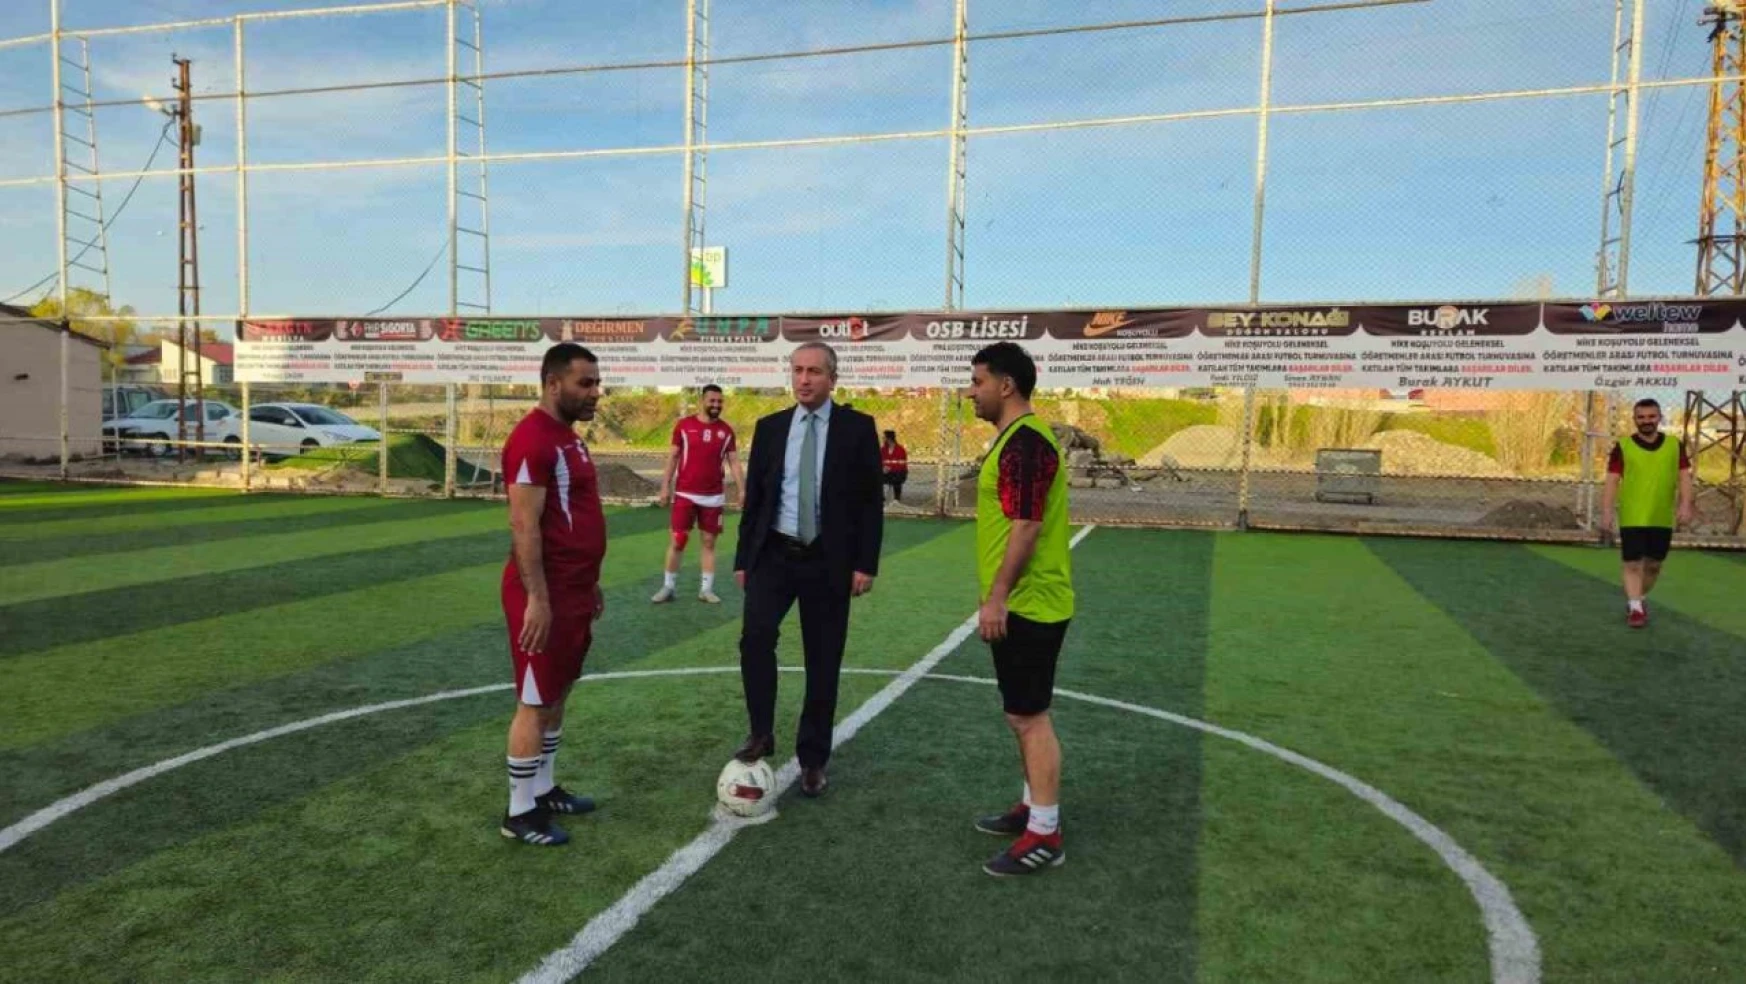 Ağrı'da geleneksel öğretmenler arası futbol turnuvası heyecanla başladı